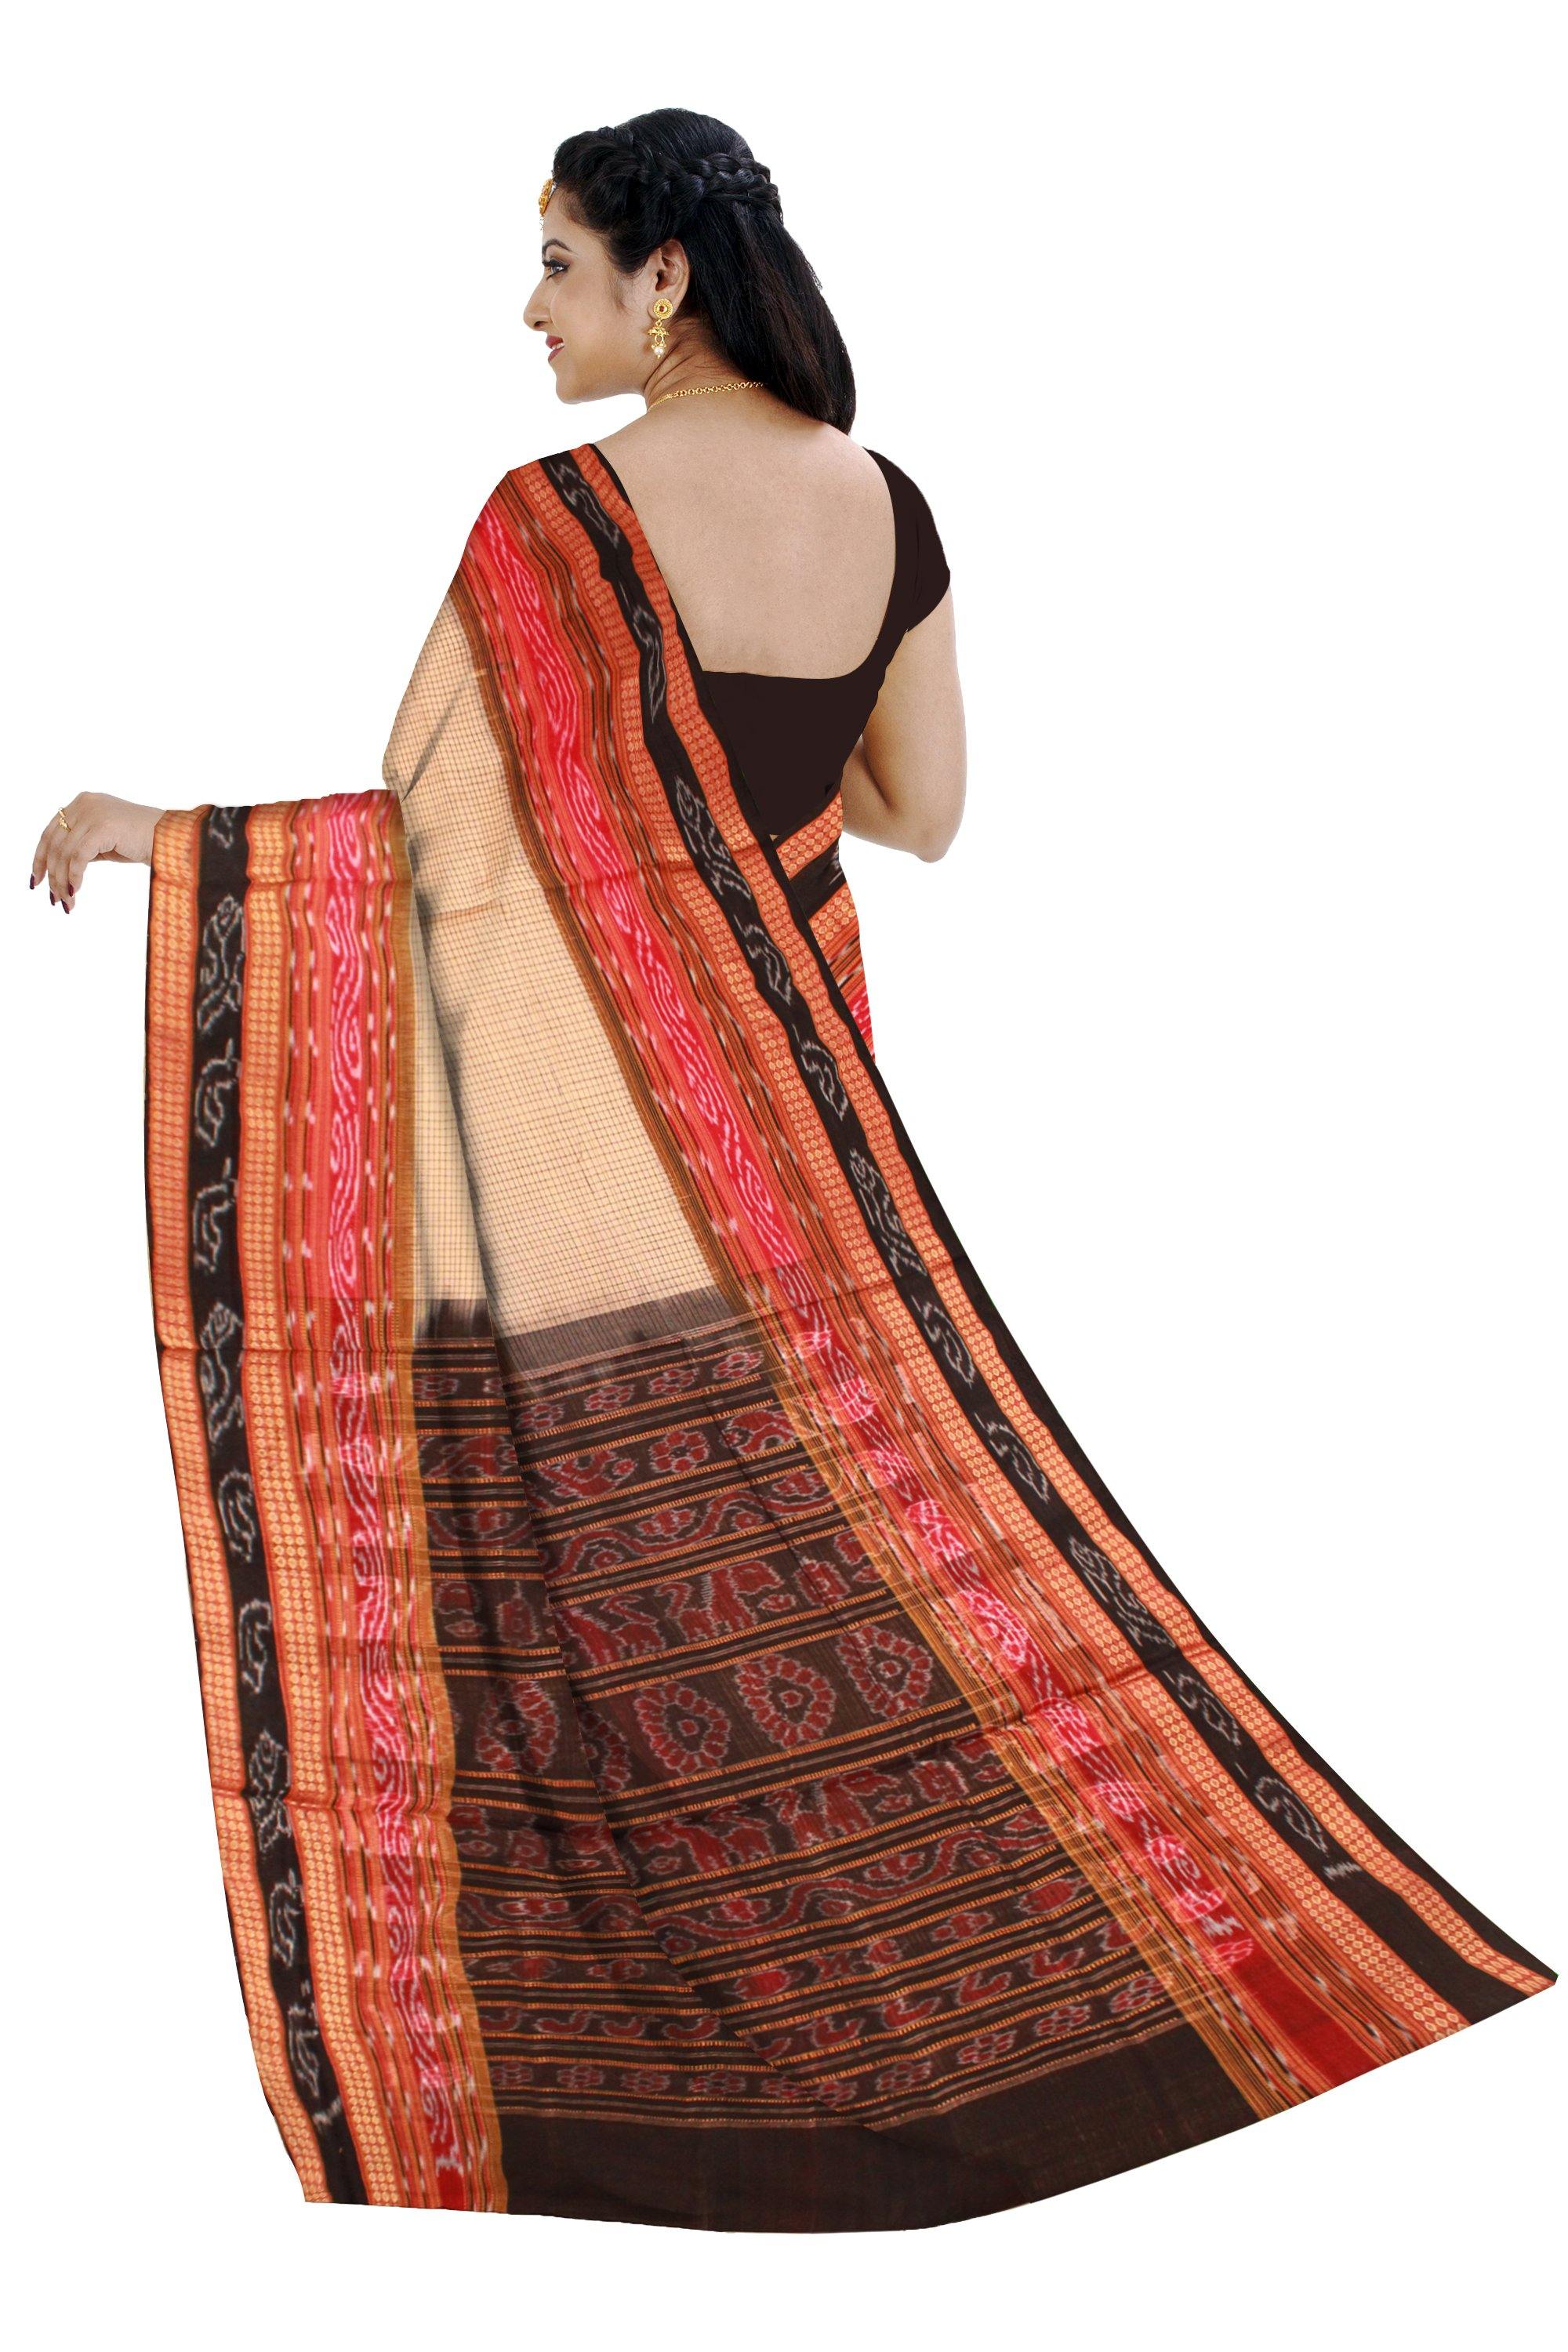 Traditional Sachipar cotton saree with out blouse piece. - Koshali Arts & Crafts Enterprise